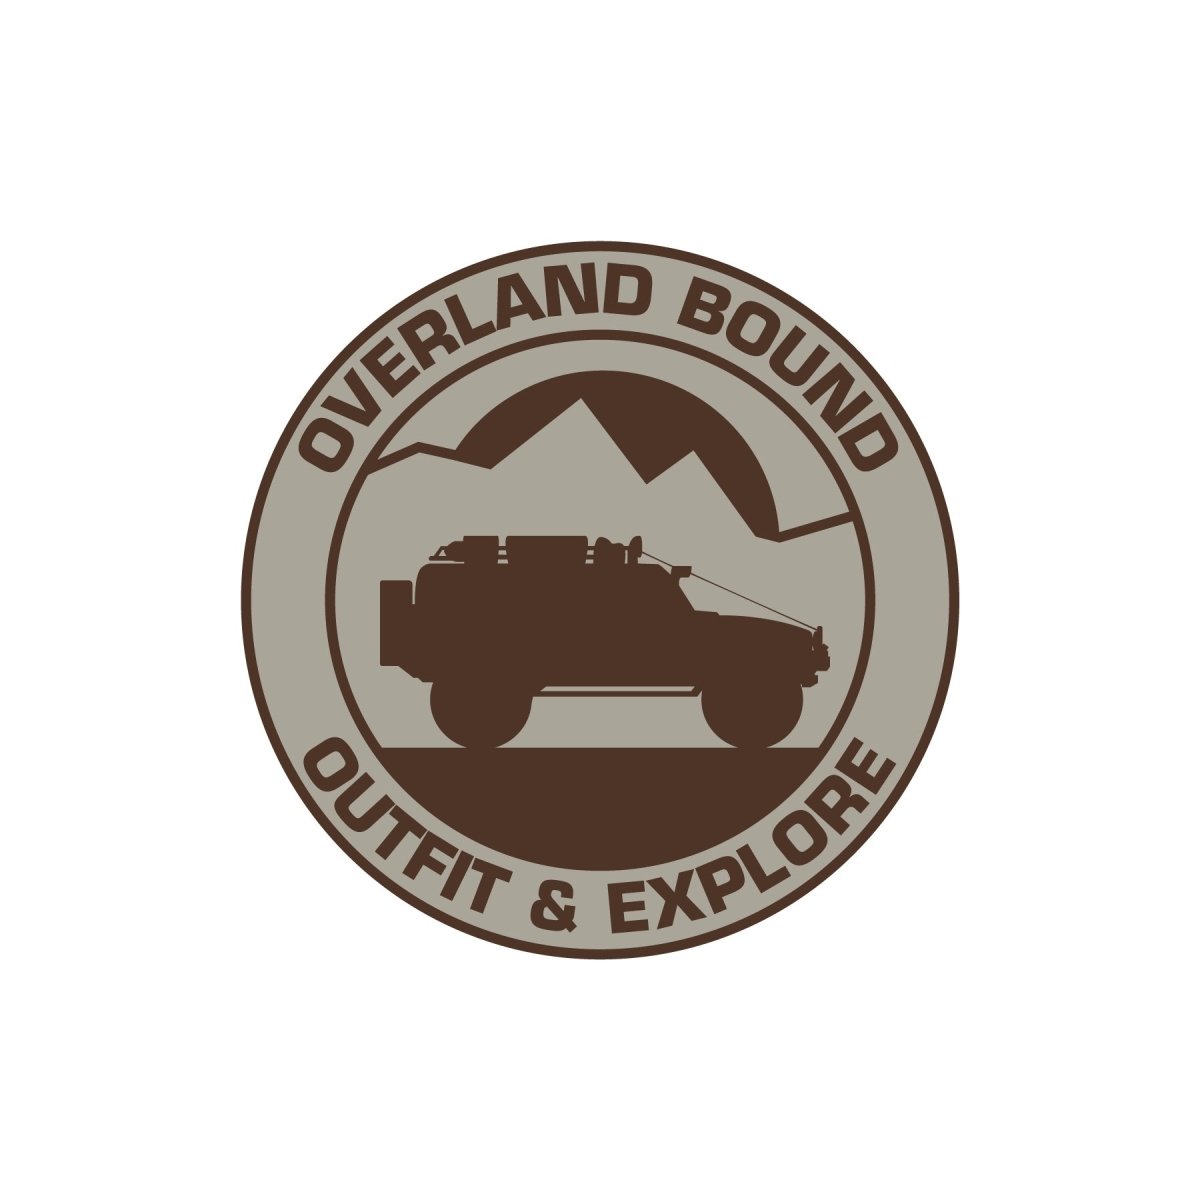 Overland Bound Sticker - Overland Bound